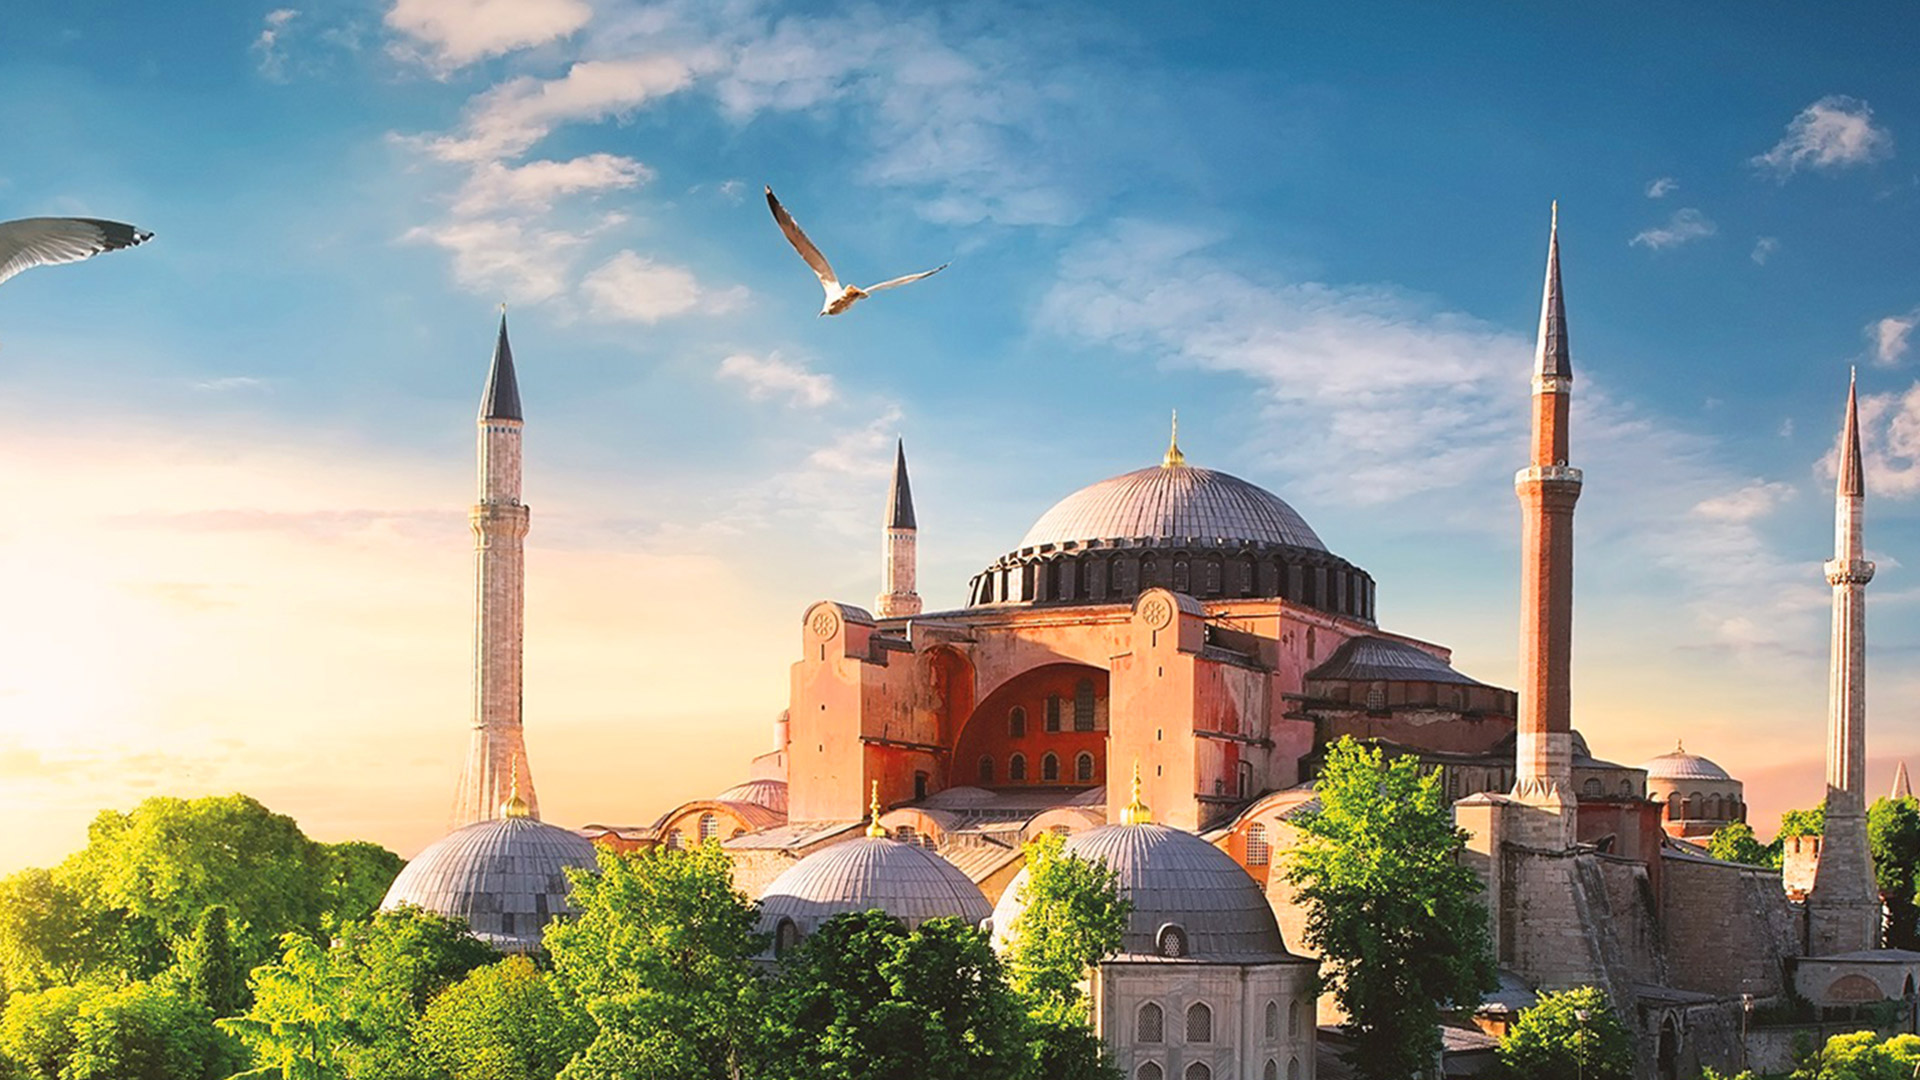 The Hagia Sophia Mosque